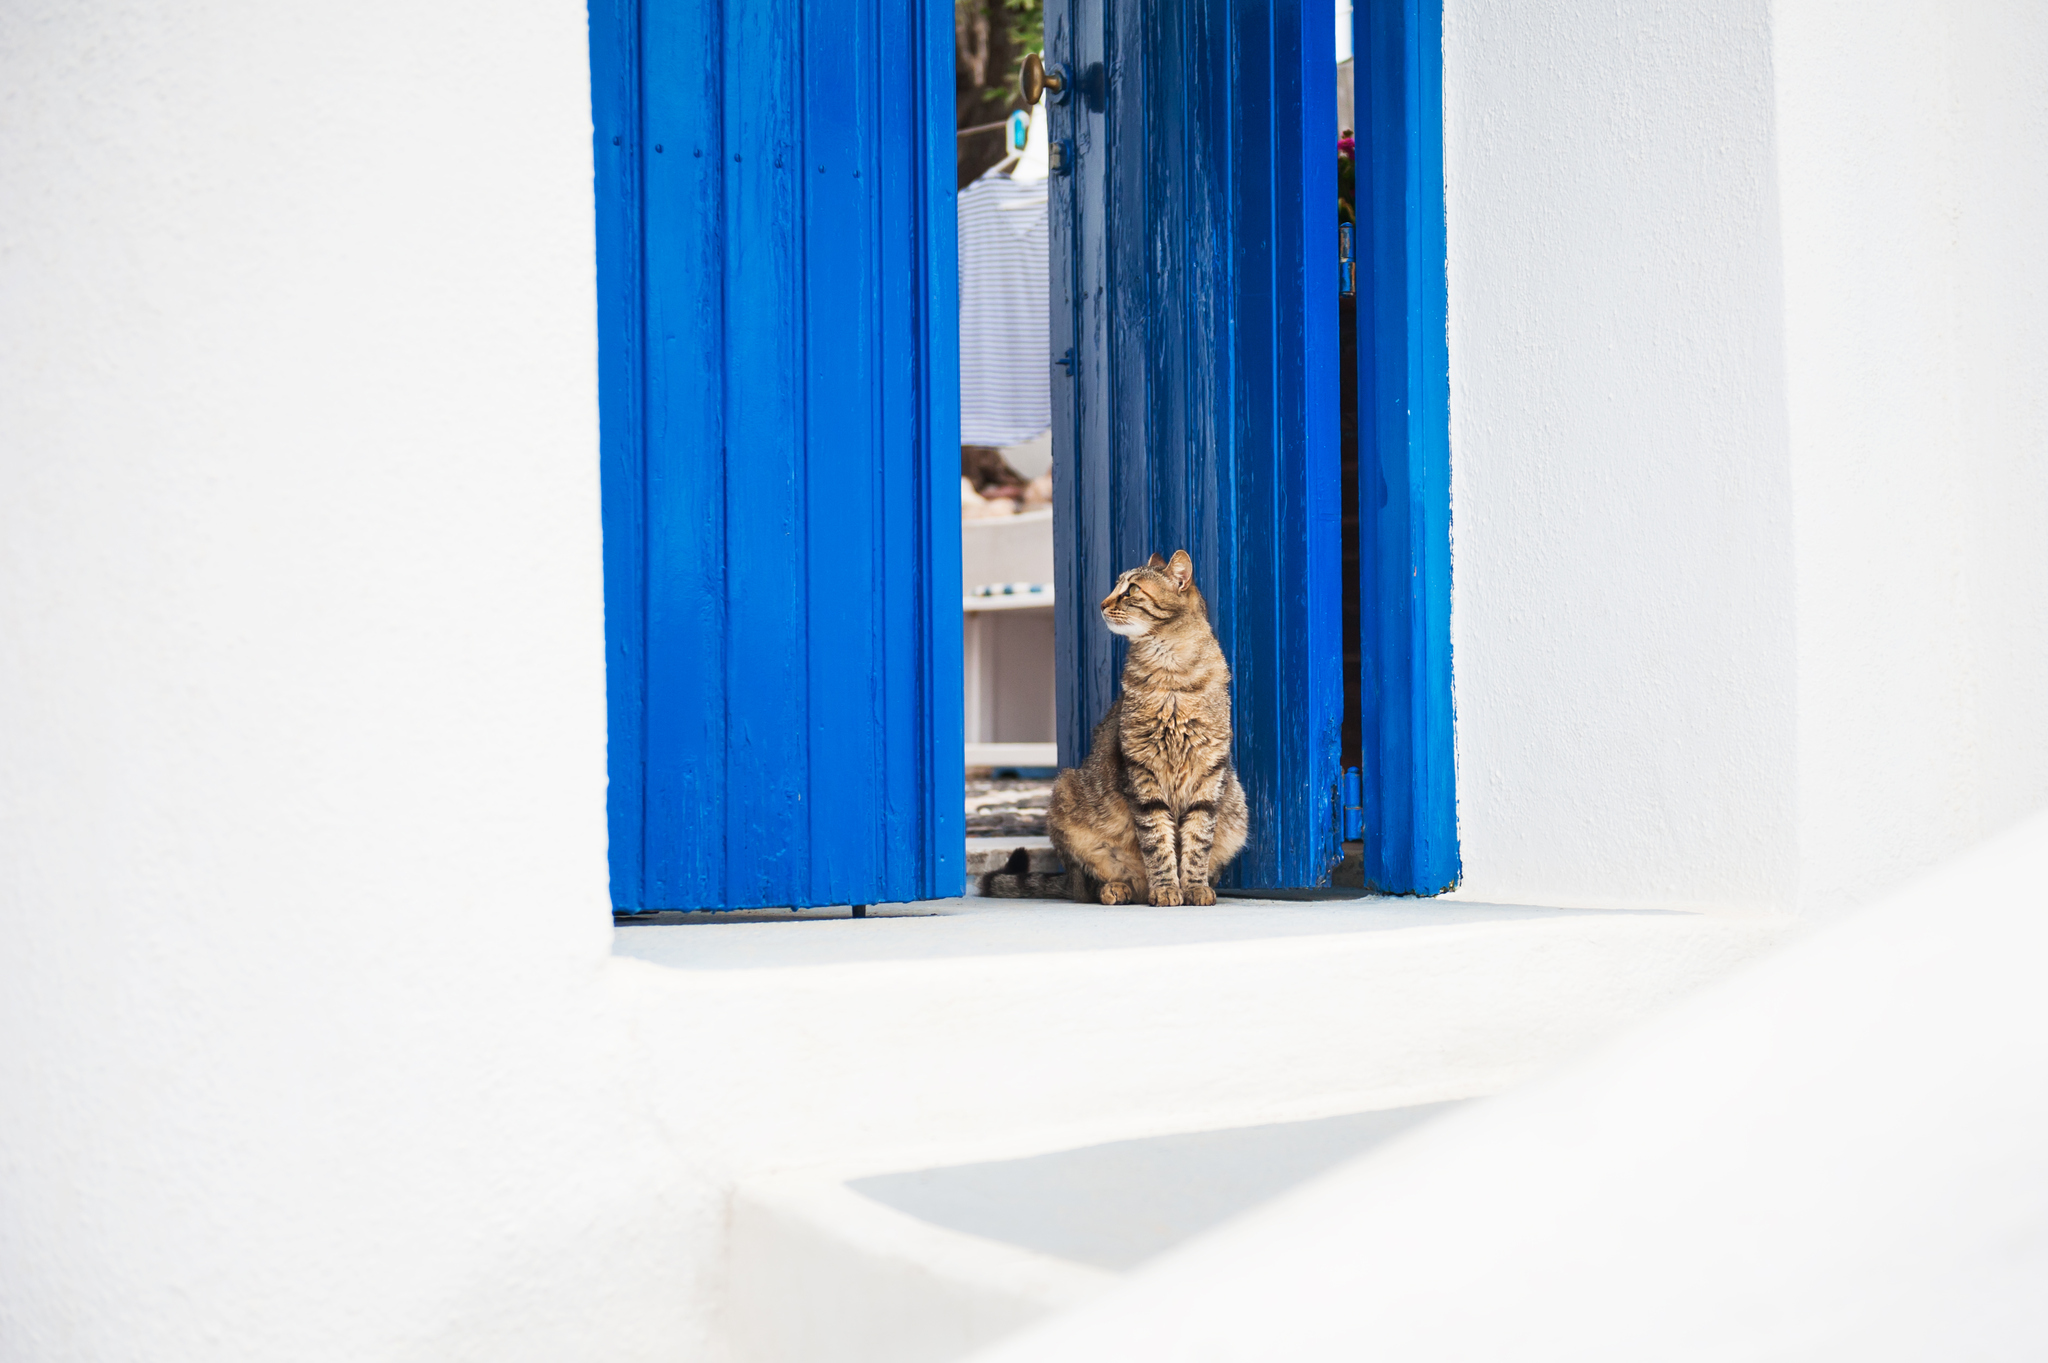 kt siedzący w niebieskich drzwiach na tle białej ściany, gdzieś w grecji, detal